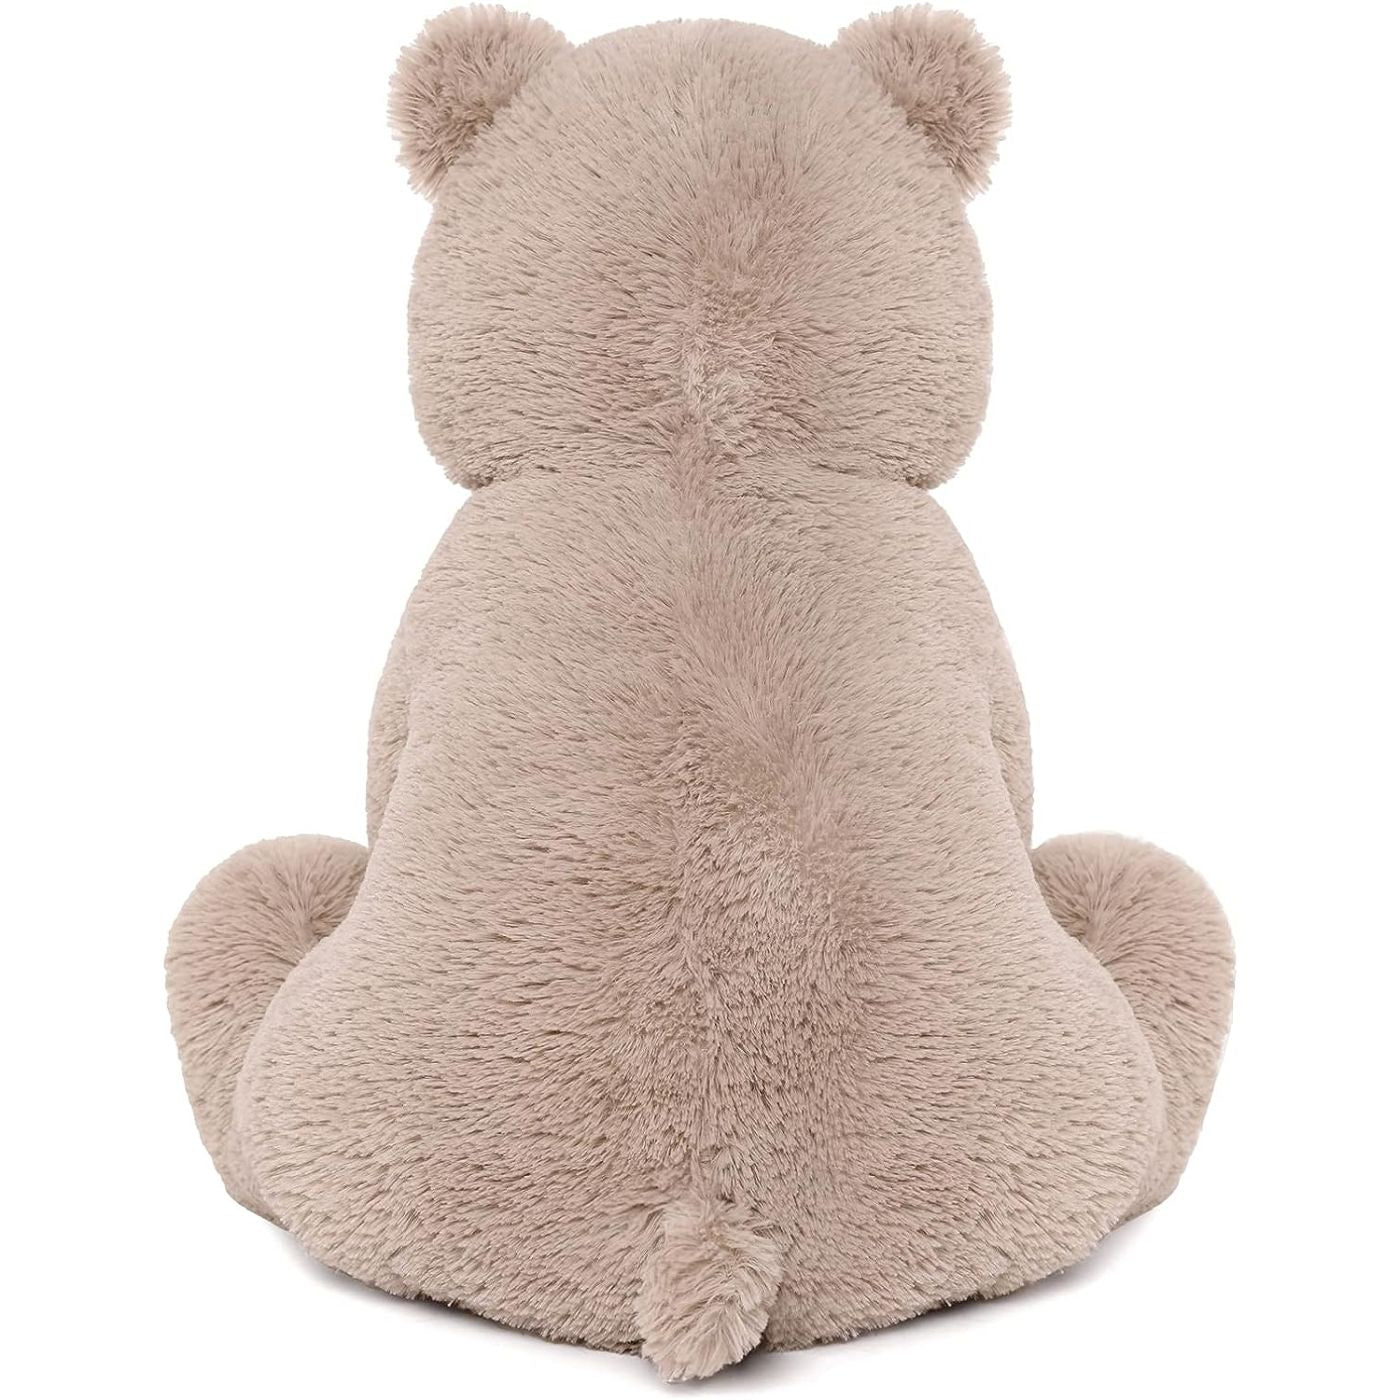 Teddy Bear Stuffed Animal Toy, 18 Inches